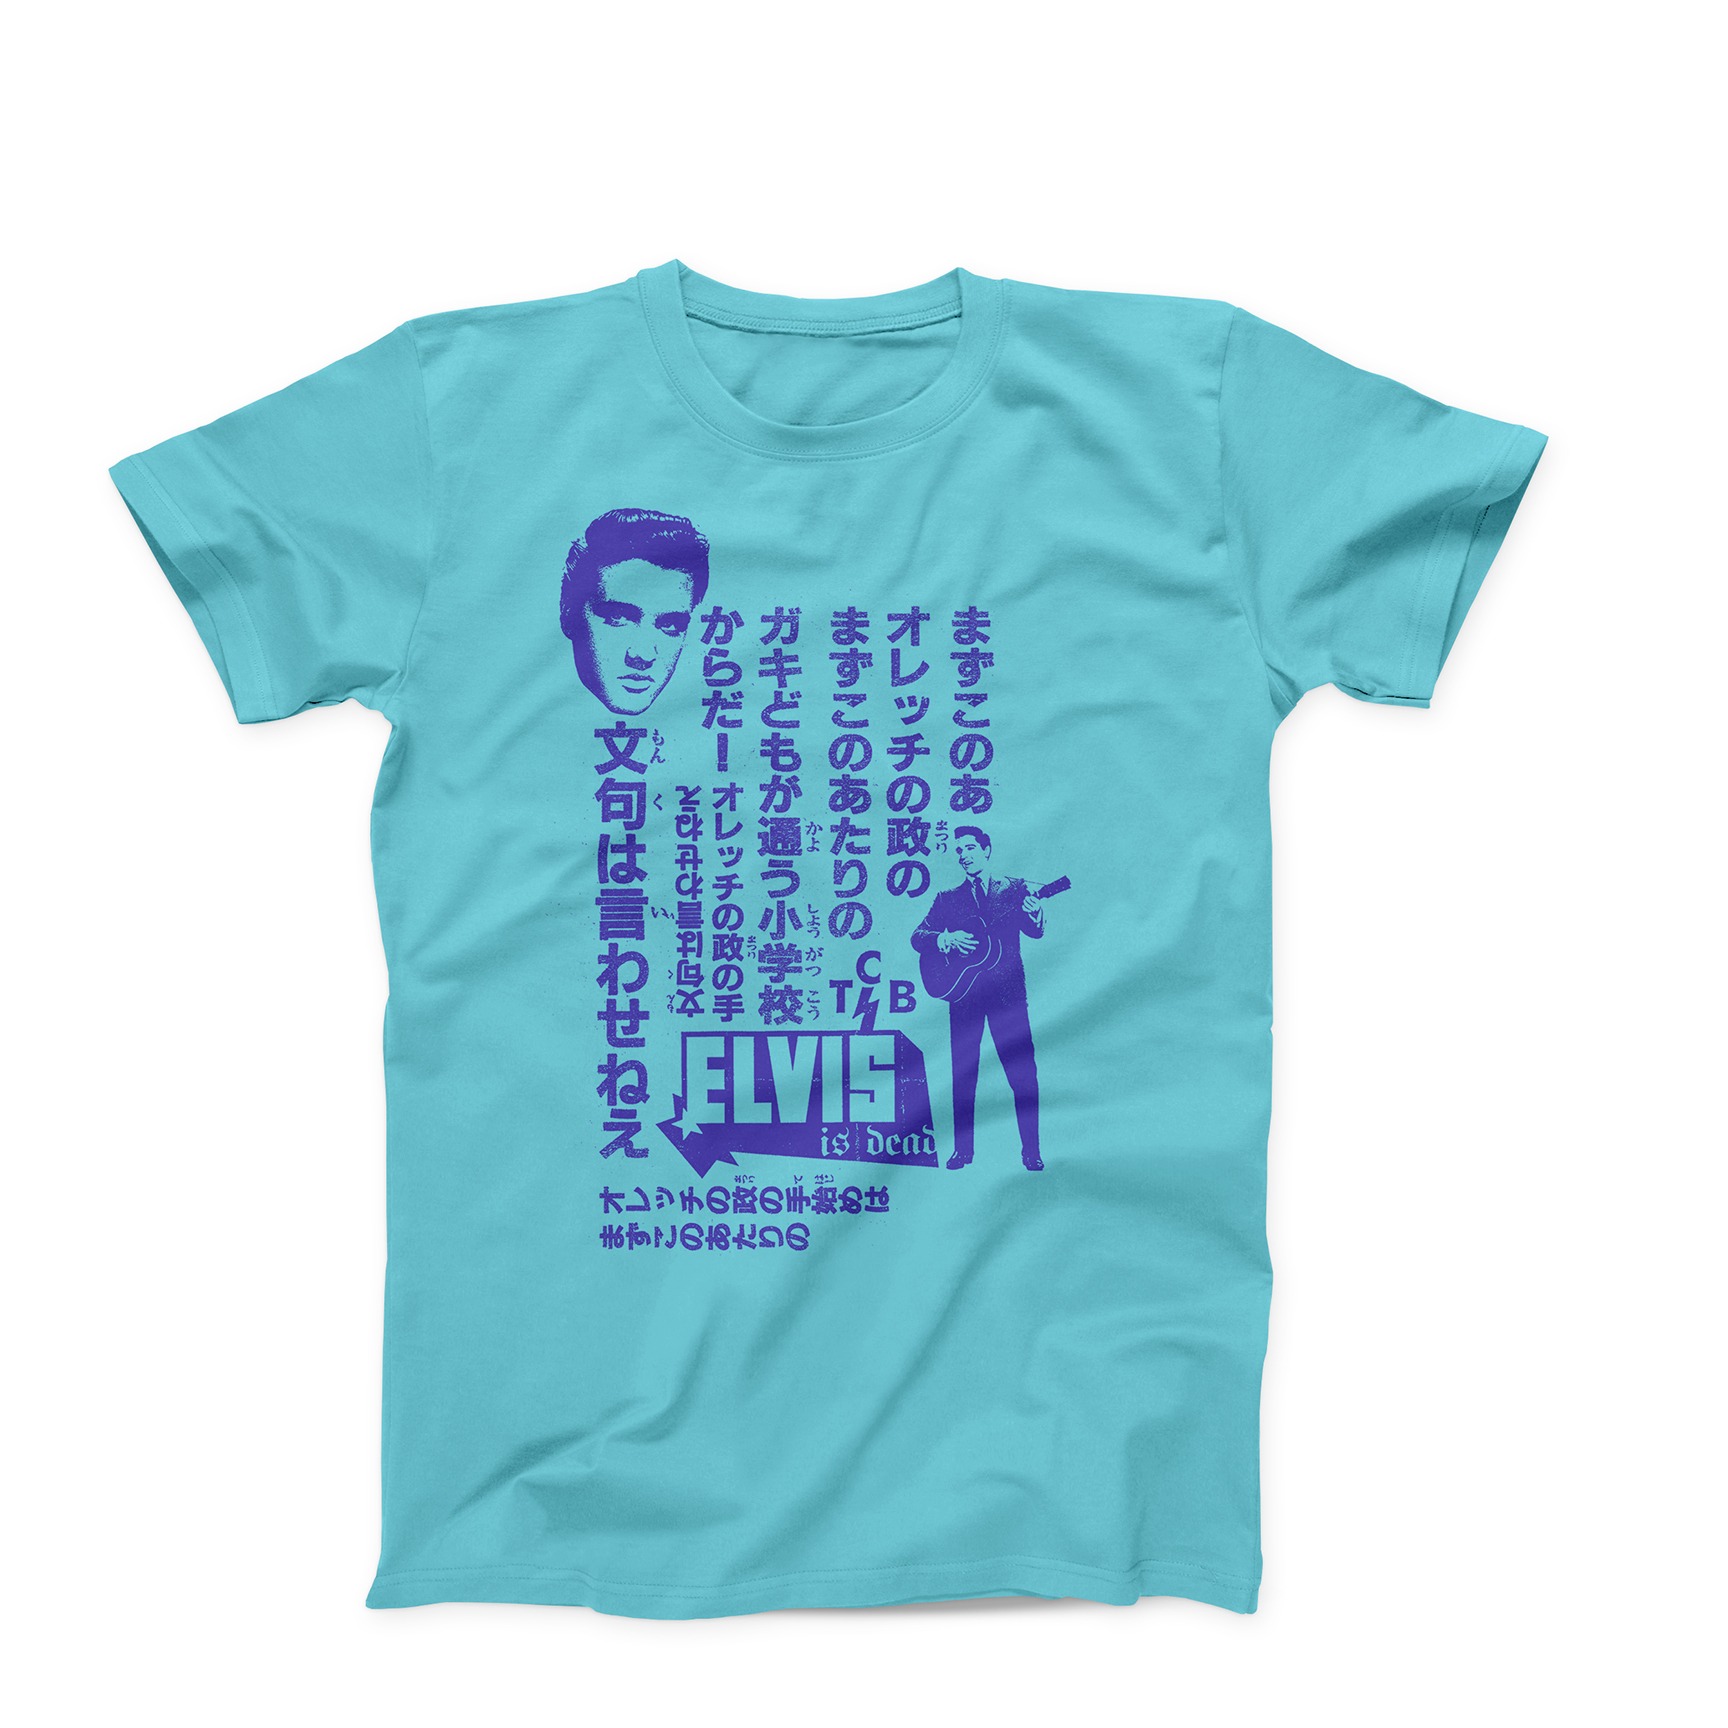 Elvis is Dead T-Shirt